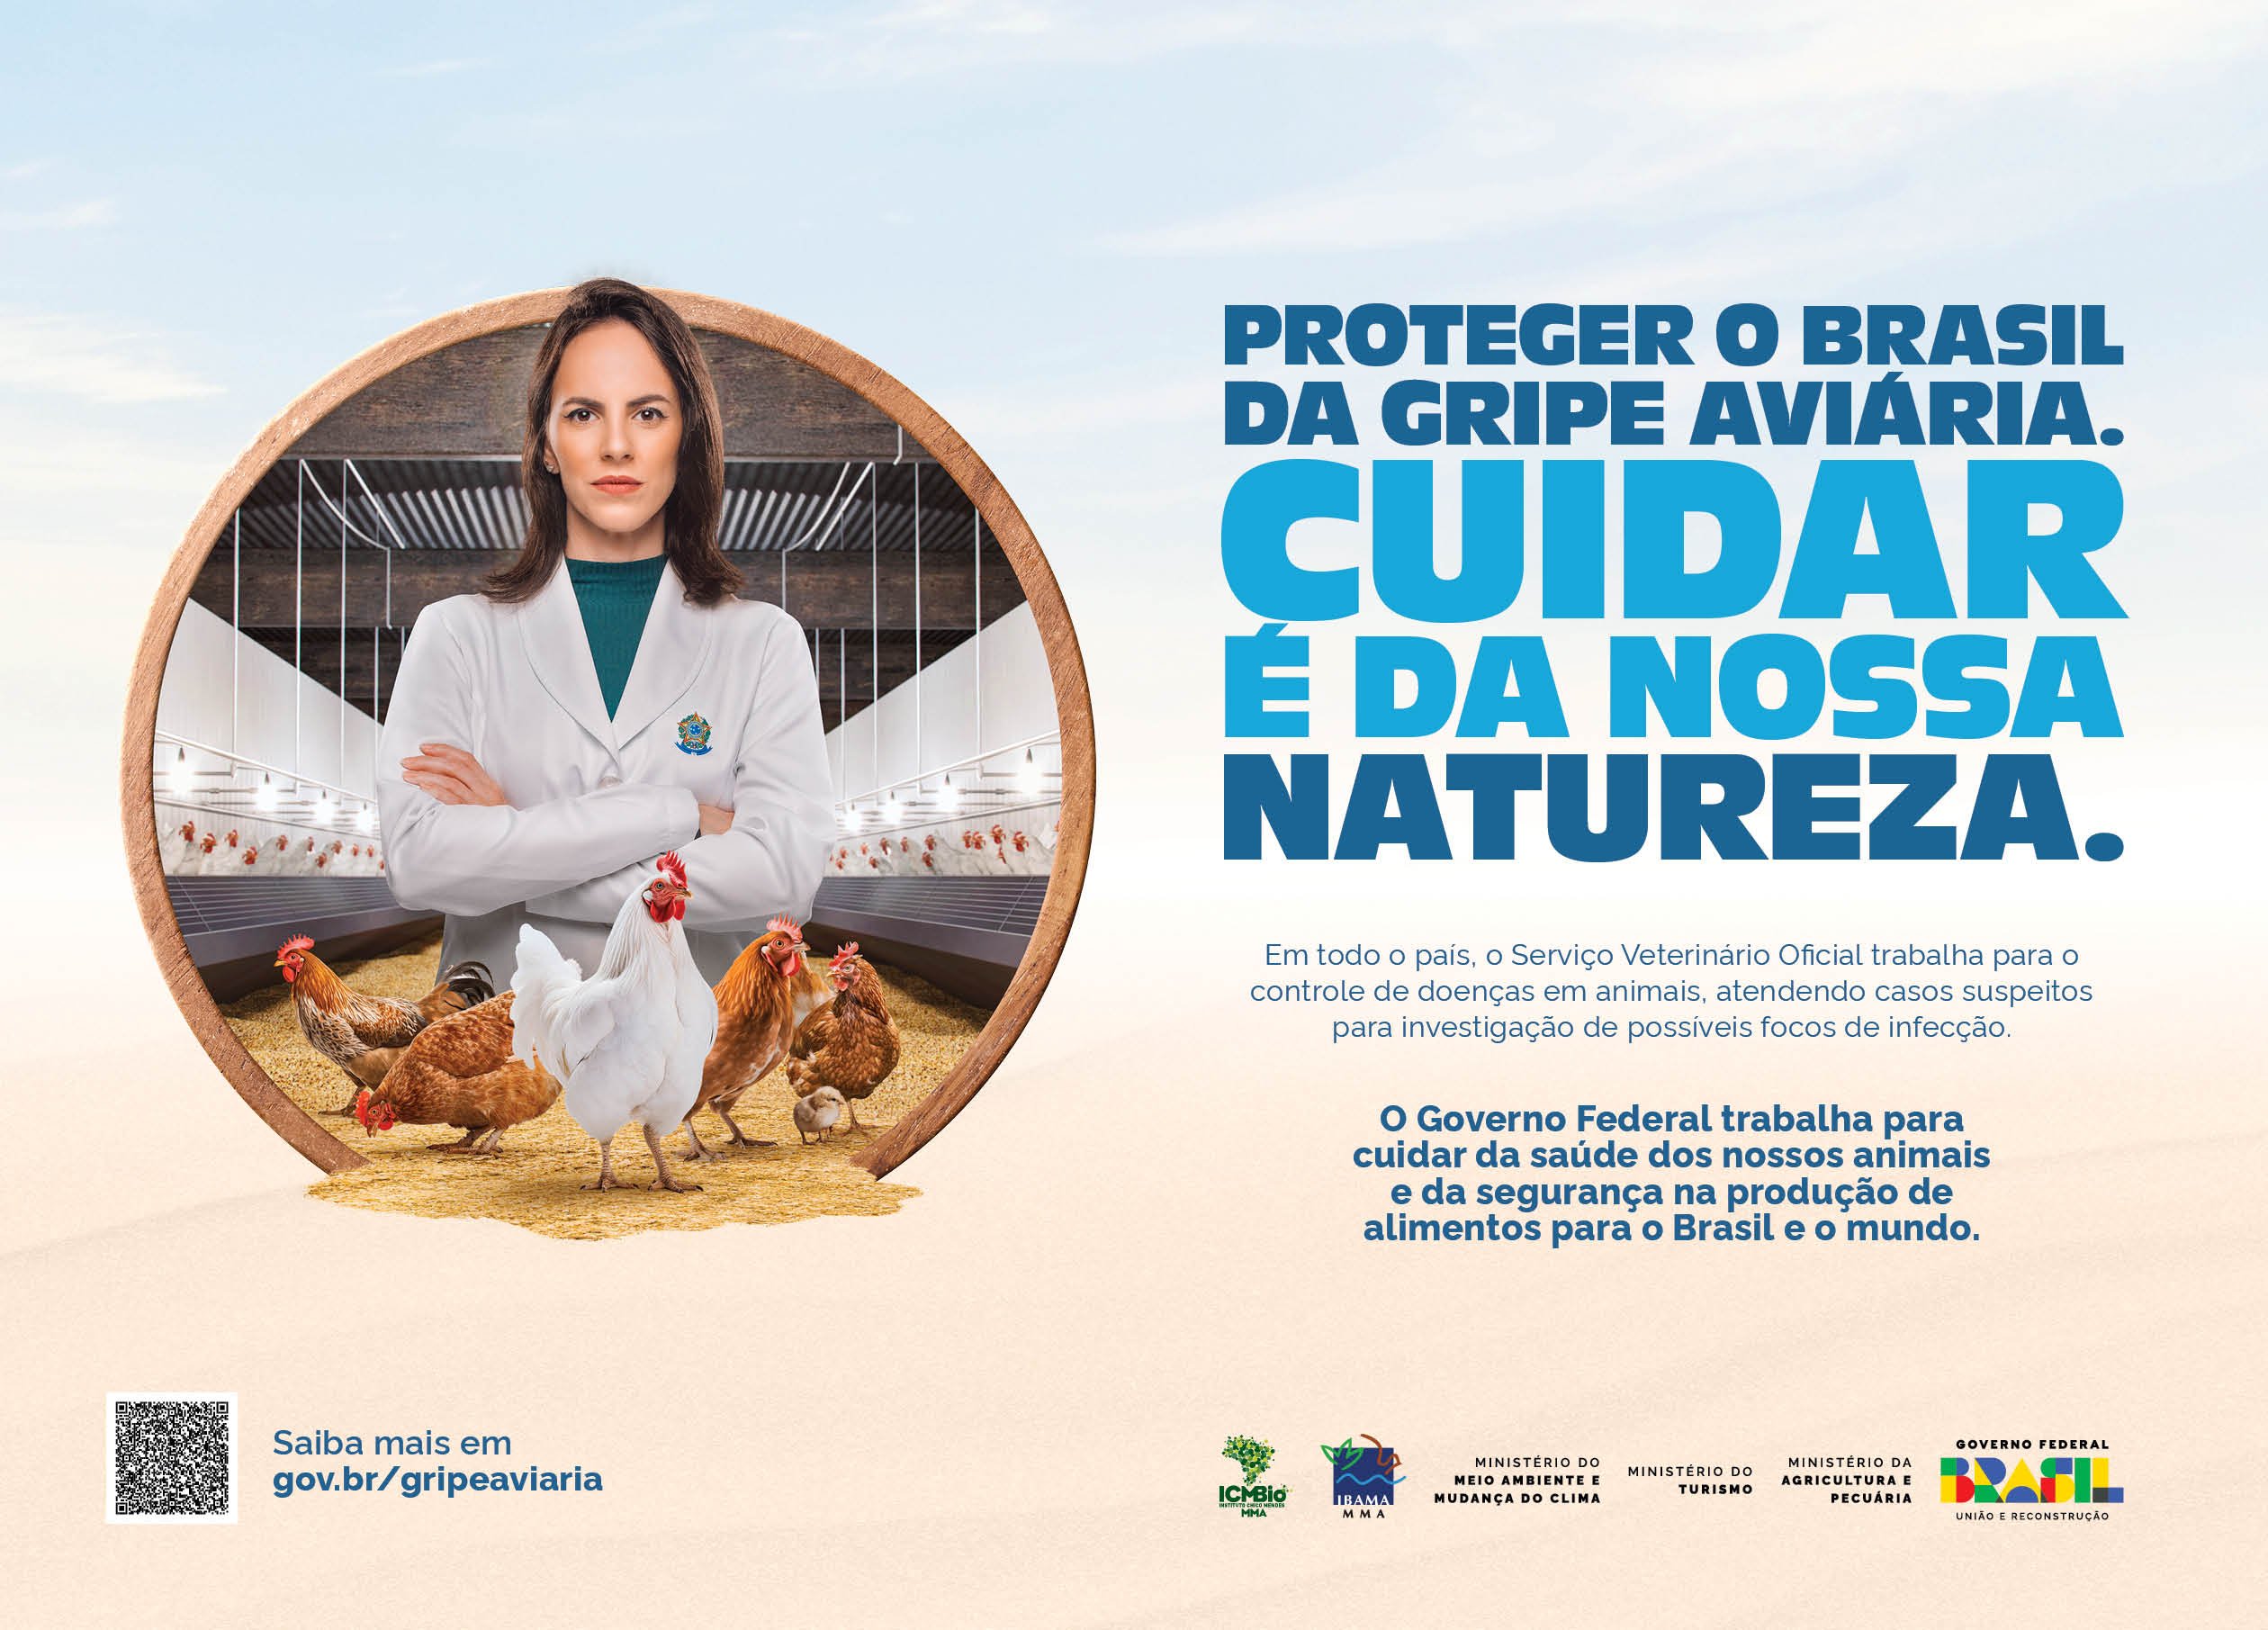 Featured image for “Gripe aviária – Ações ambientais”